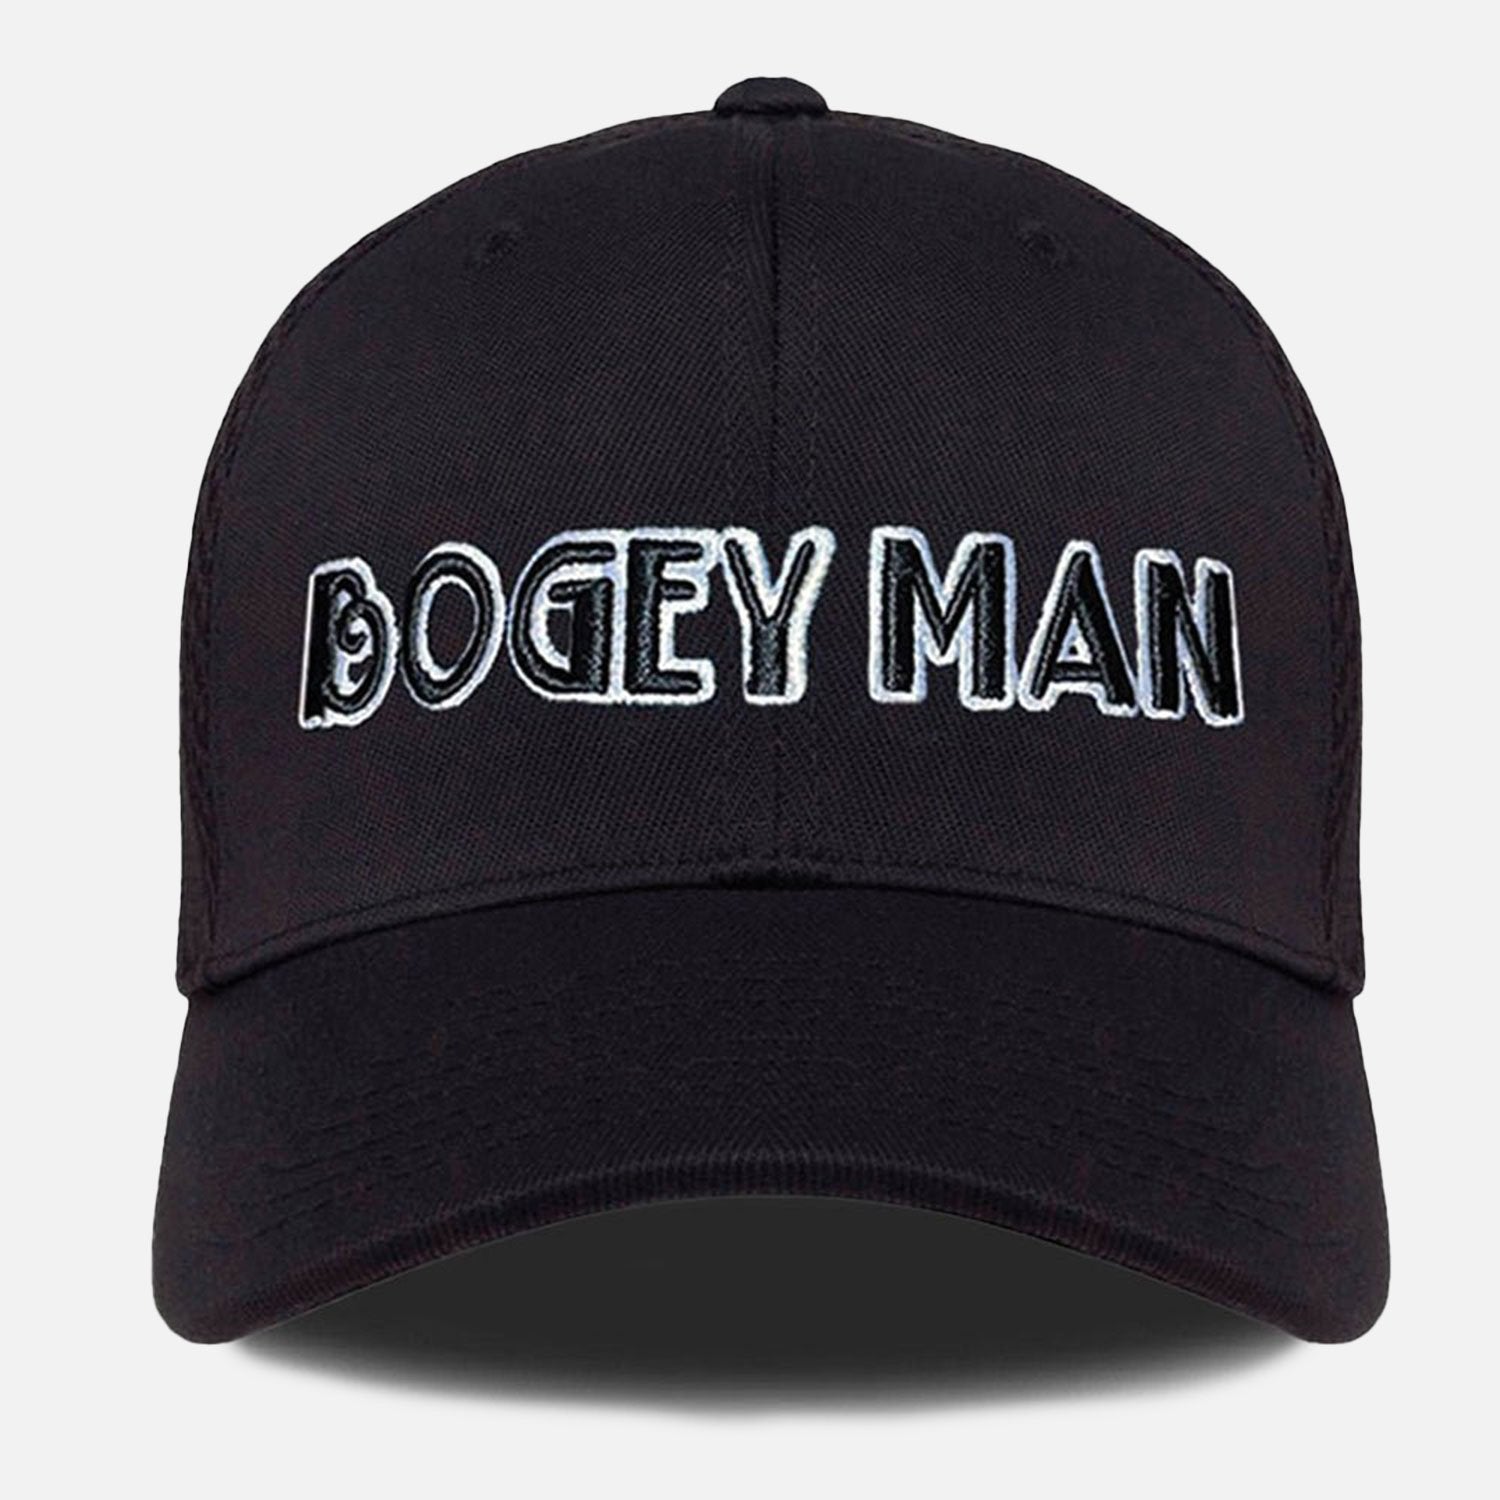 Bogey Man Golf Hat - F. King Golf